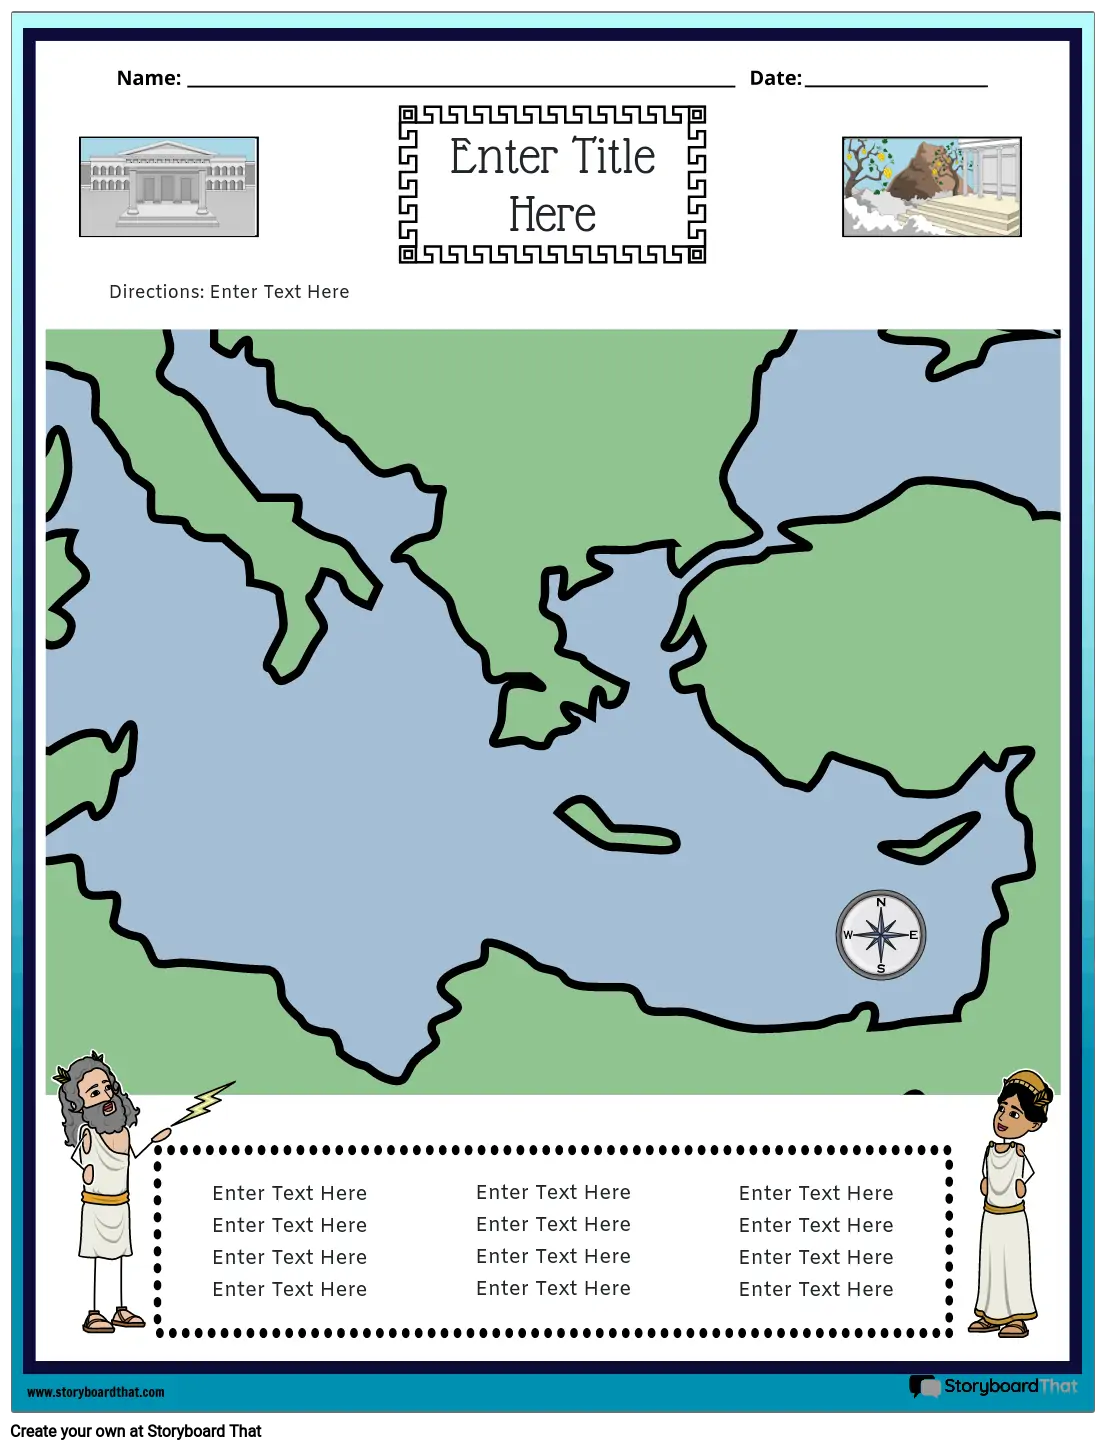 מפת יוון העתיקה